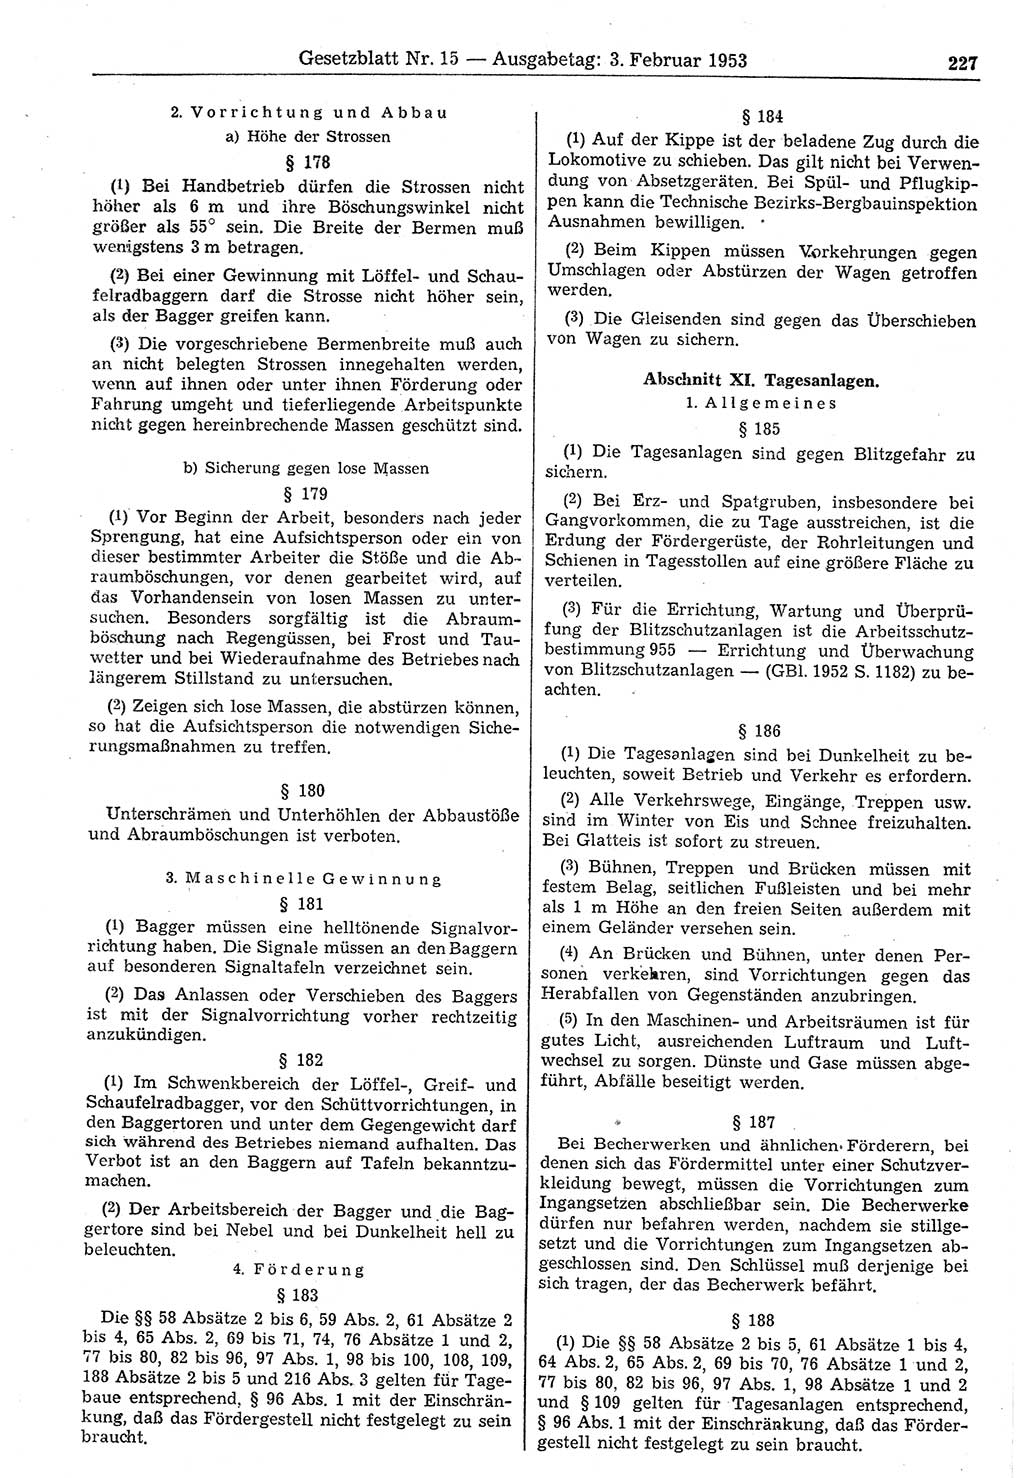 Gesetzblatt (GBl.) der Deutschen Demokratischen Republik (DDR) 1953, Seite 227 (GBl. DDR 1953, S. 227)